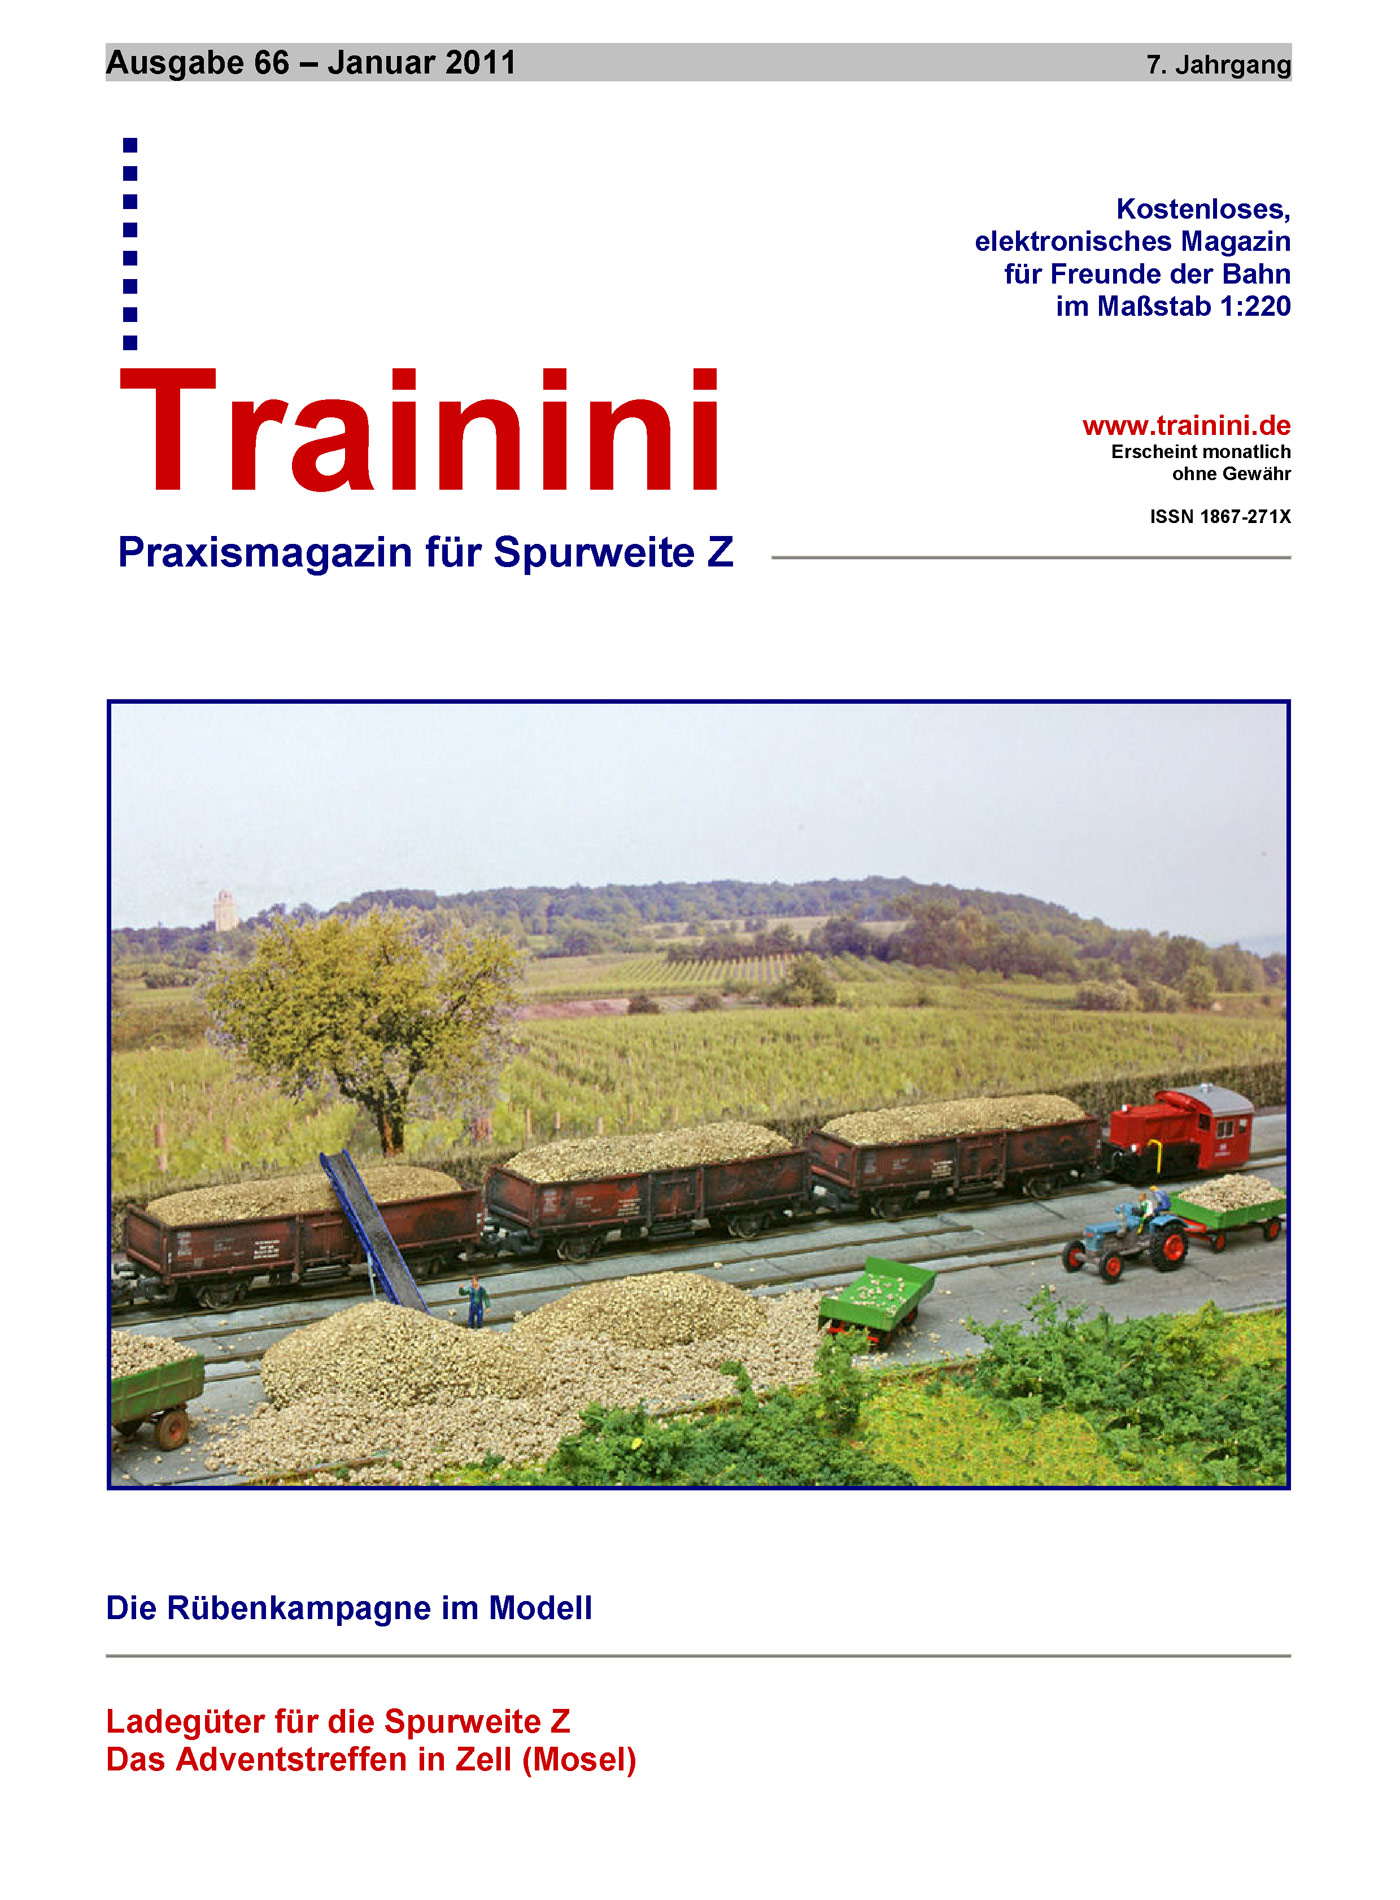 Trainini Ausgabe Januar 2011